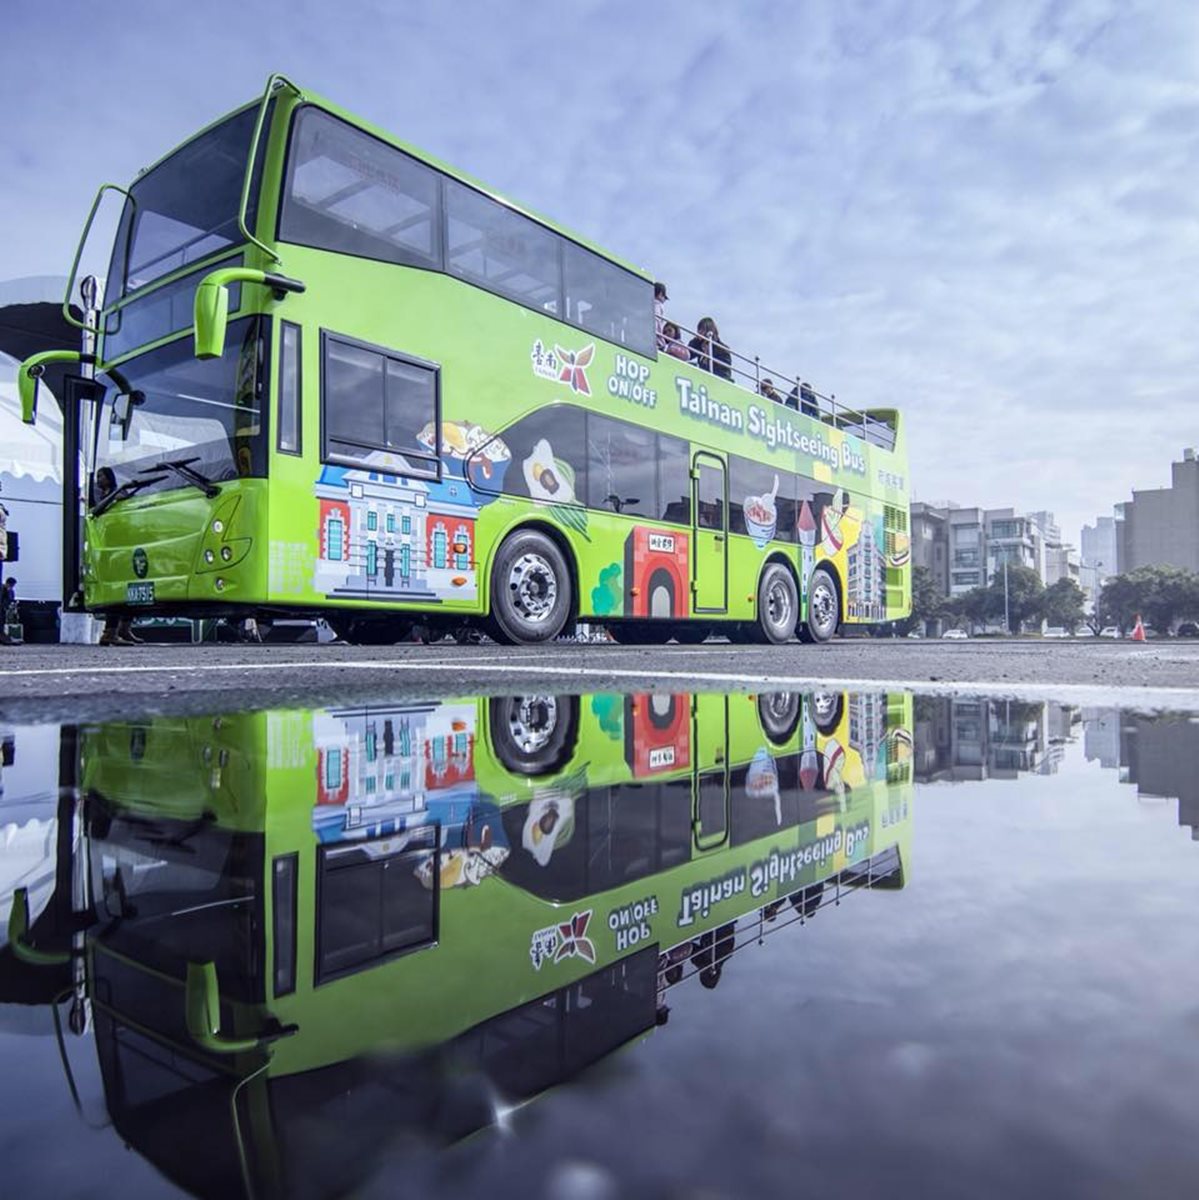 台南新玩法 千萬打造雙層巴士遊12熱點